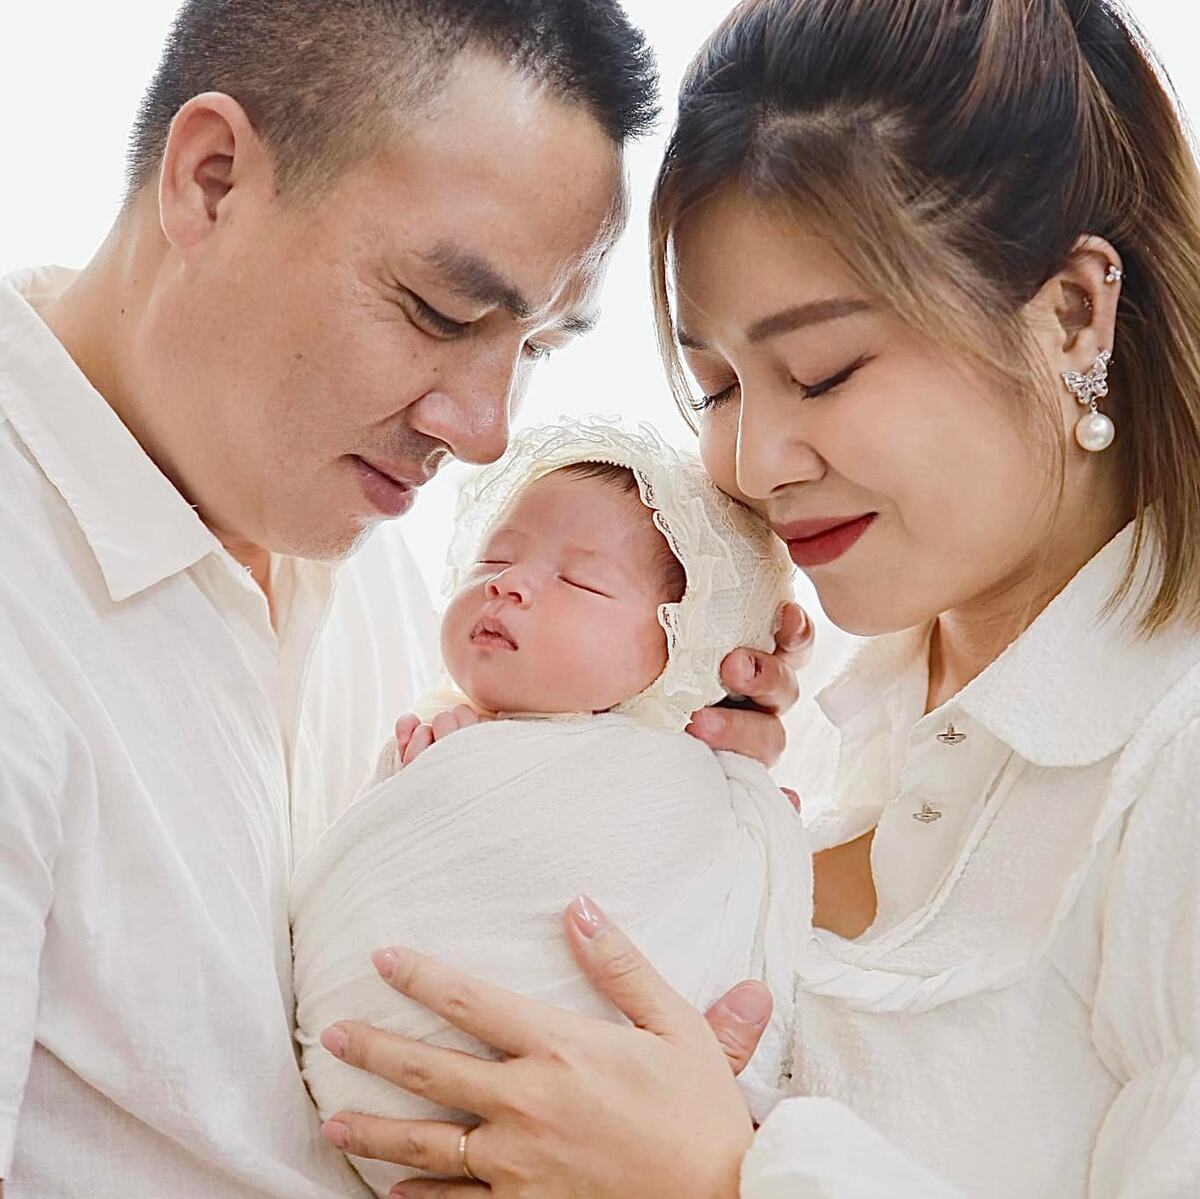 MC Hoàng Linh và ông xã bên cạnh con gái nhỏ. Ảnh: Facebook nhân vật